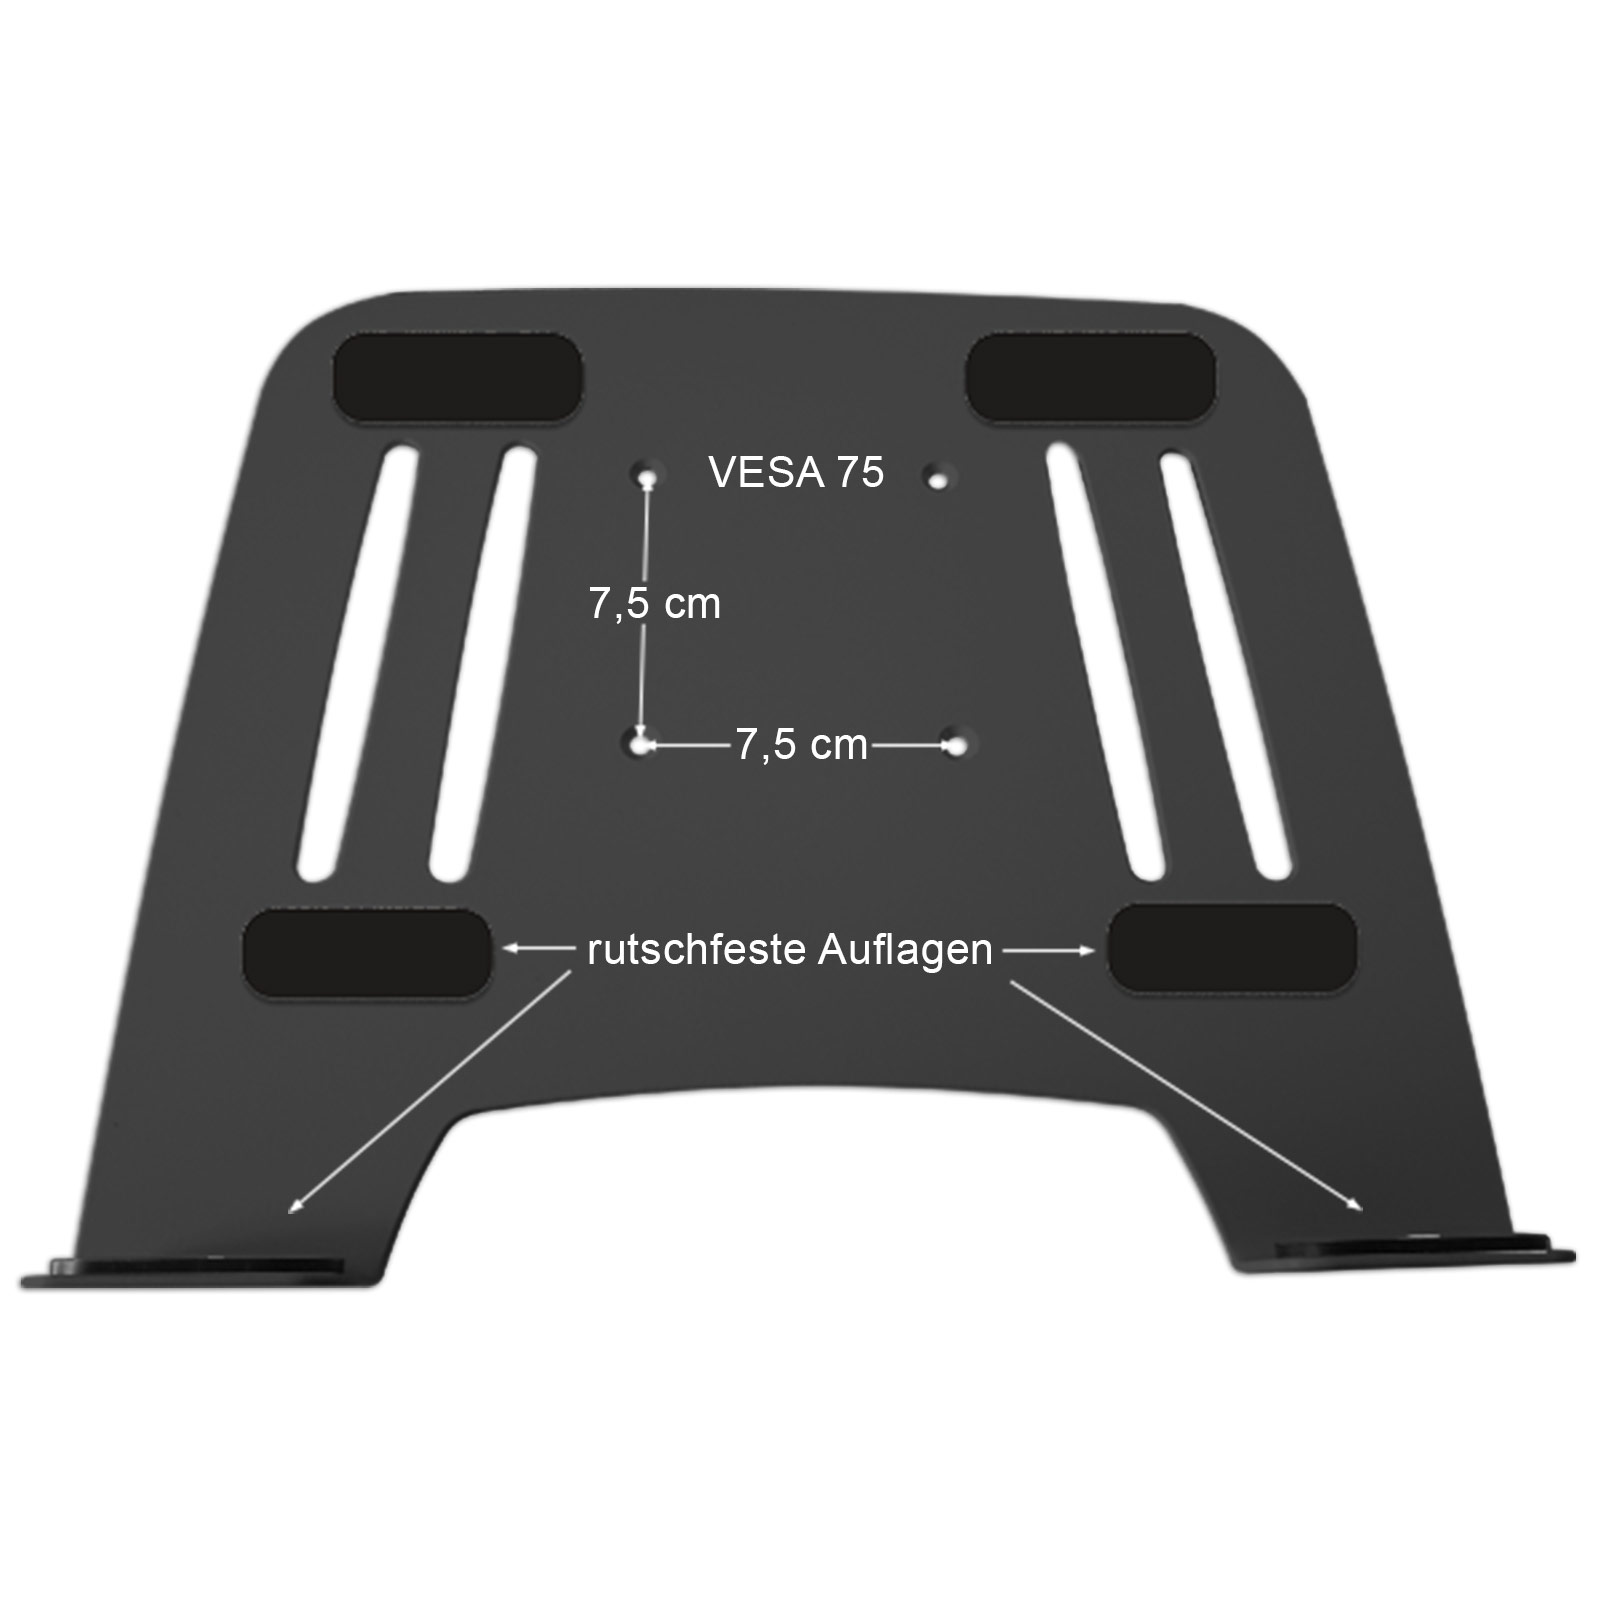 Wandhalterung Ablage mit Adapterplatte Laptop Wandhalterung schwarz Modell: L52S-IP3B Notebook silber DRALL INSTRUMENTS Halterung